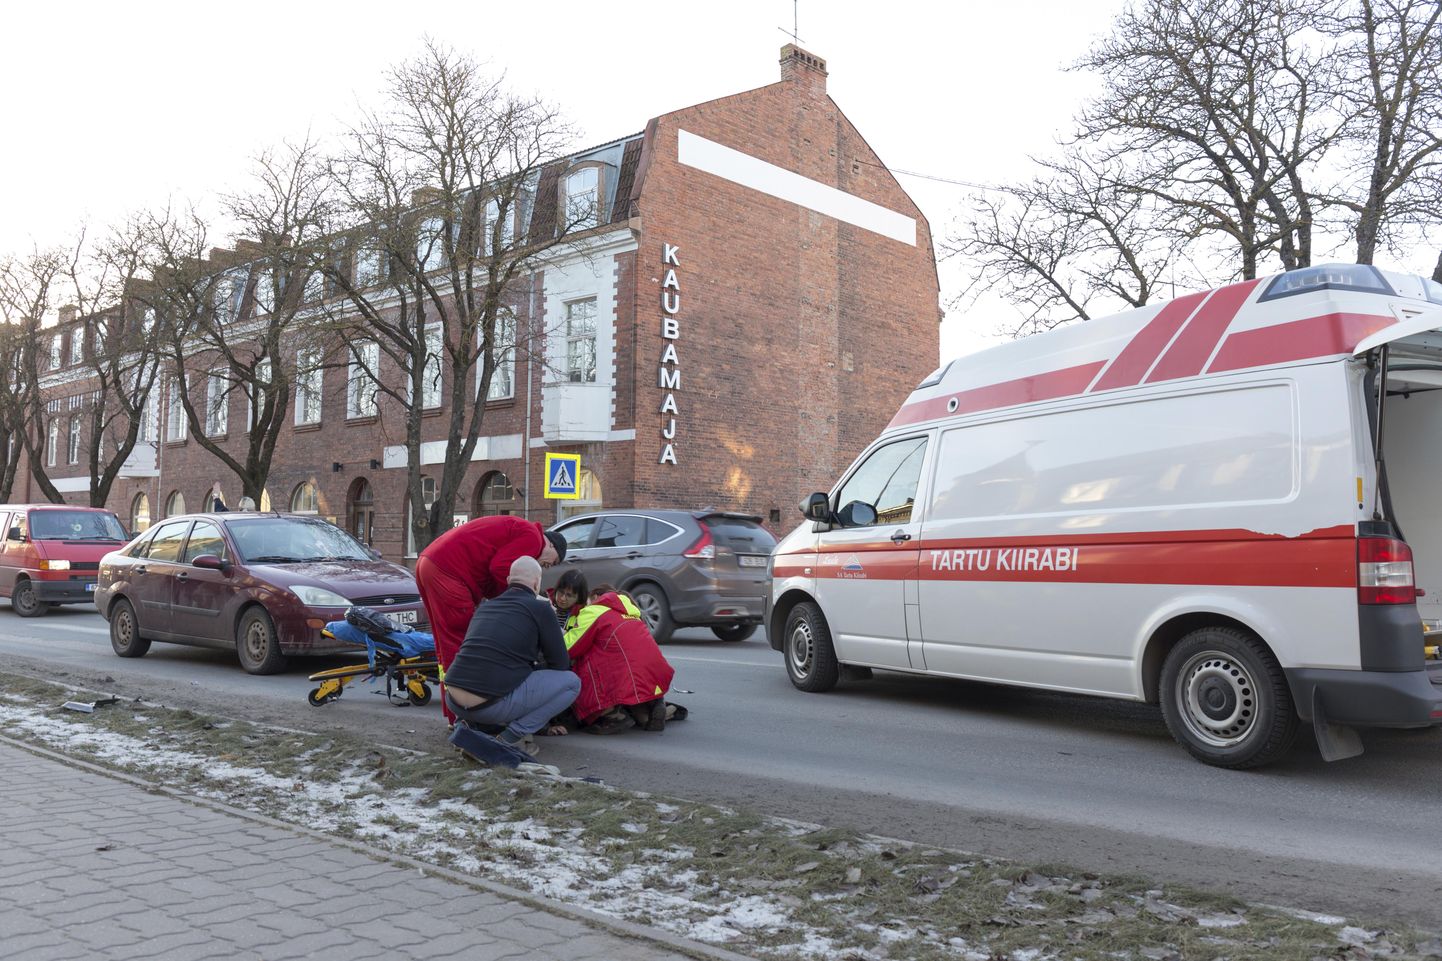 Kella 14.20 ajal sai 17-aastane neiu Tallinna tänaval ülekäigurajal sõiduautolt löögi.